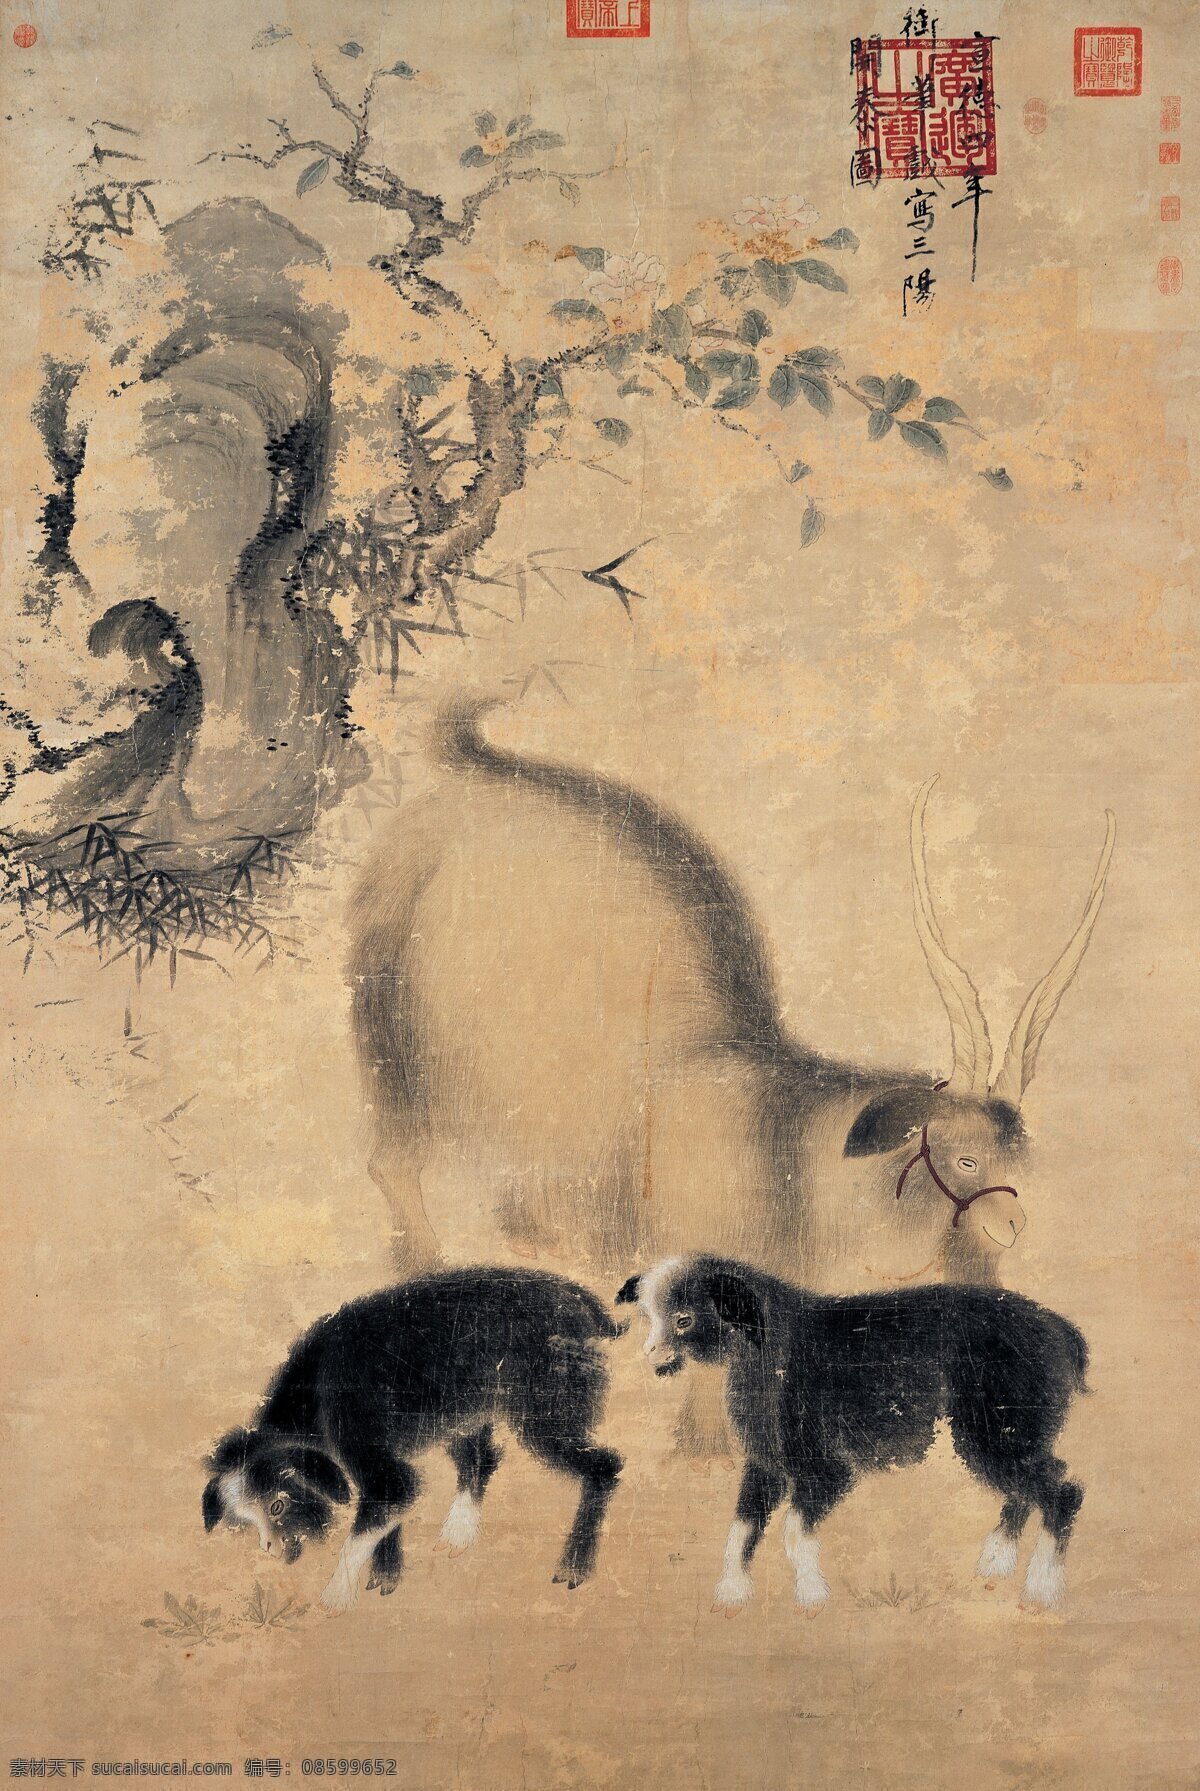 宣宗 三阳开泰 明代 纸本设色 高 横 厘米 设计素材 动物画篇 古典藏画 书画美术 黄色